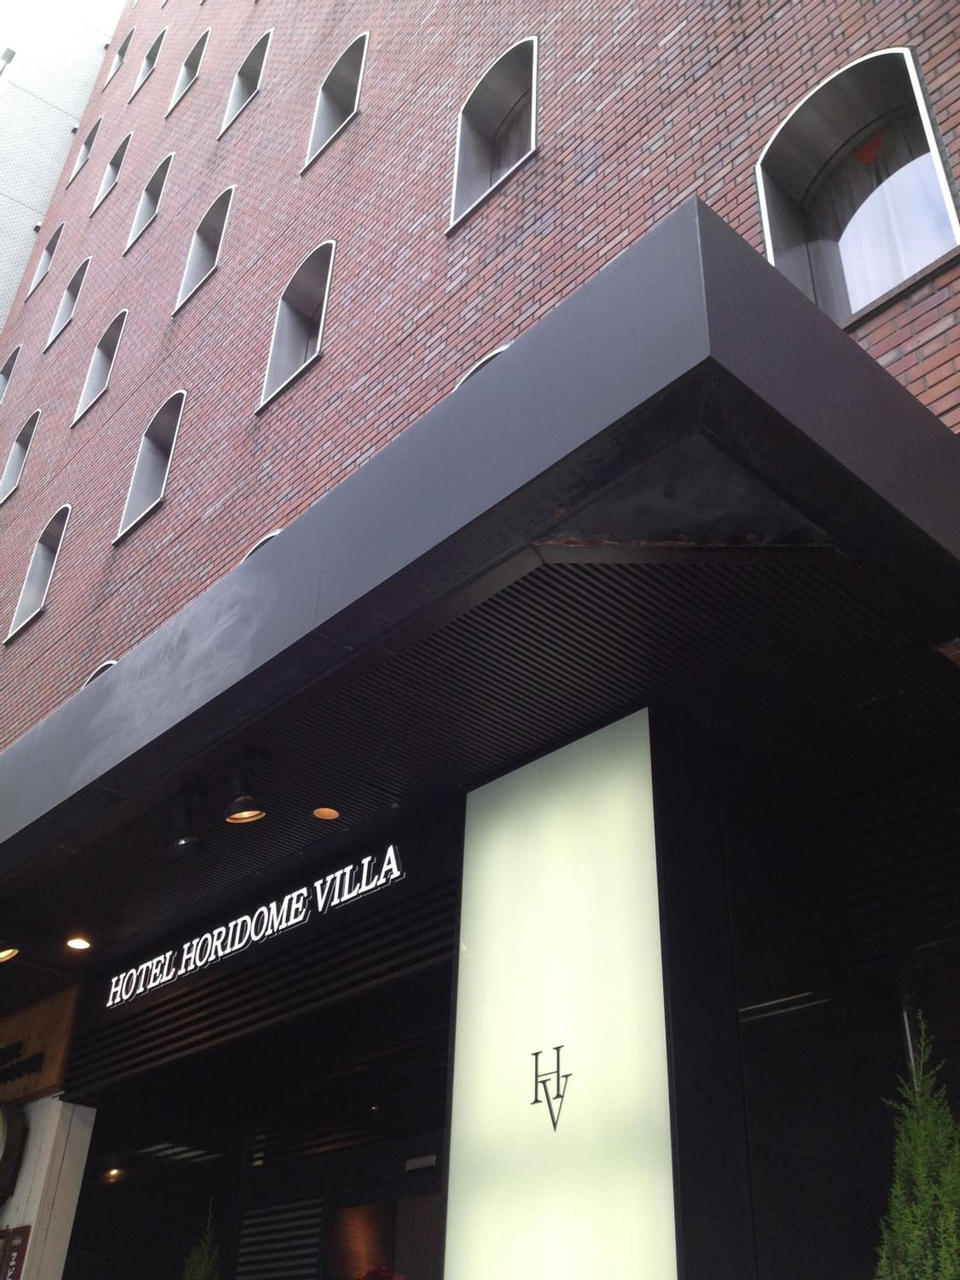 Exterior & Views 2, Hotel Horidome Villa, Chiyoda